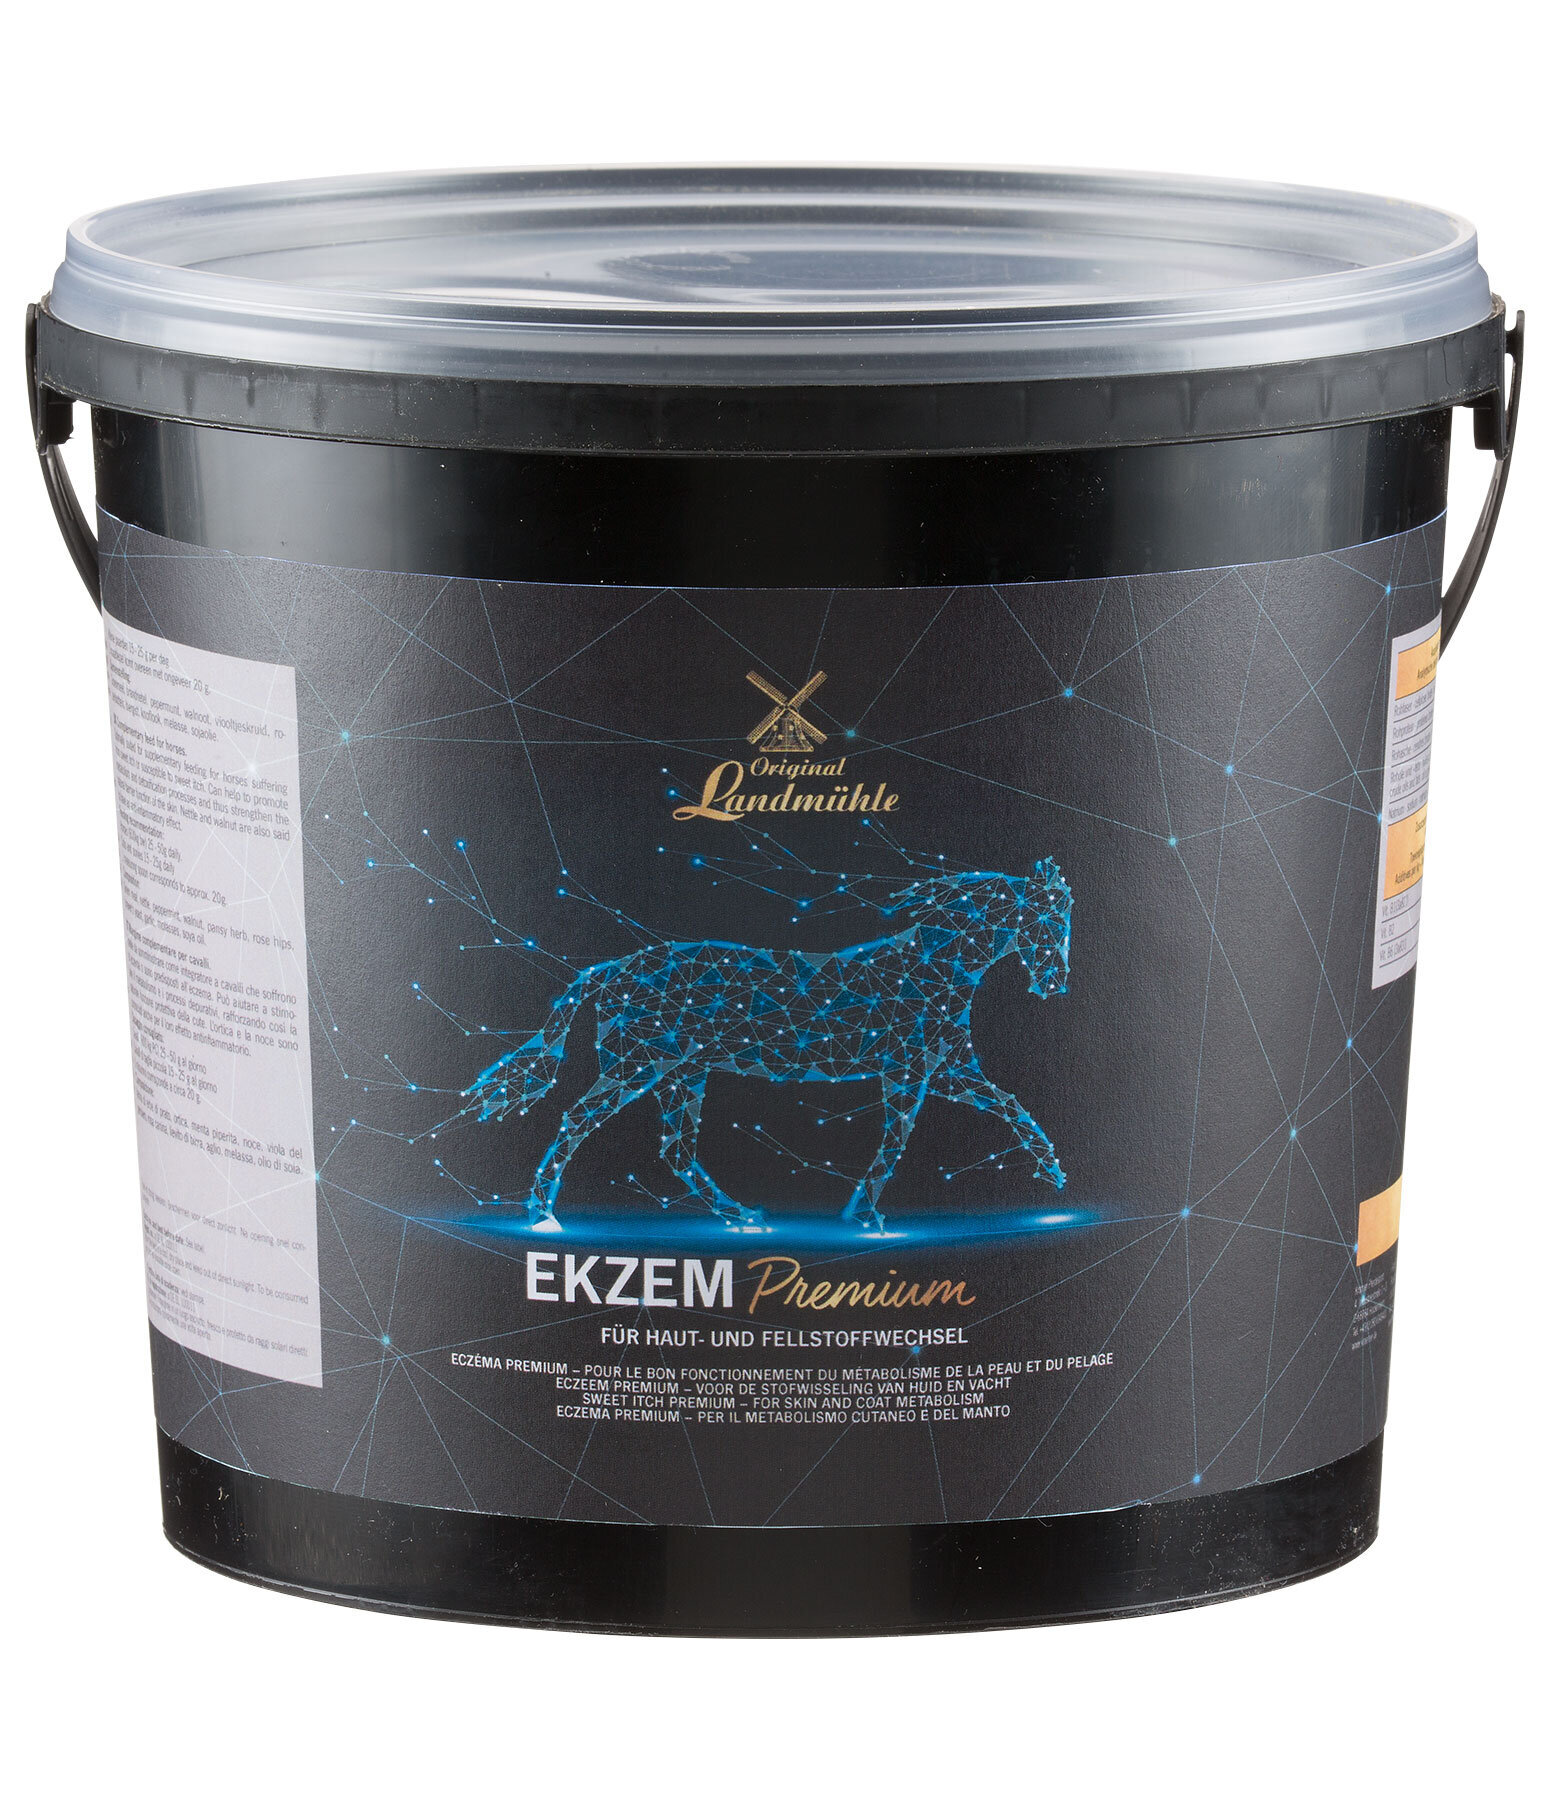 Ekzem Premium - Pferdefutter and Zusatzfutter